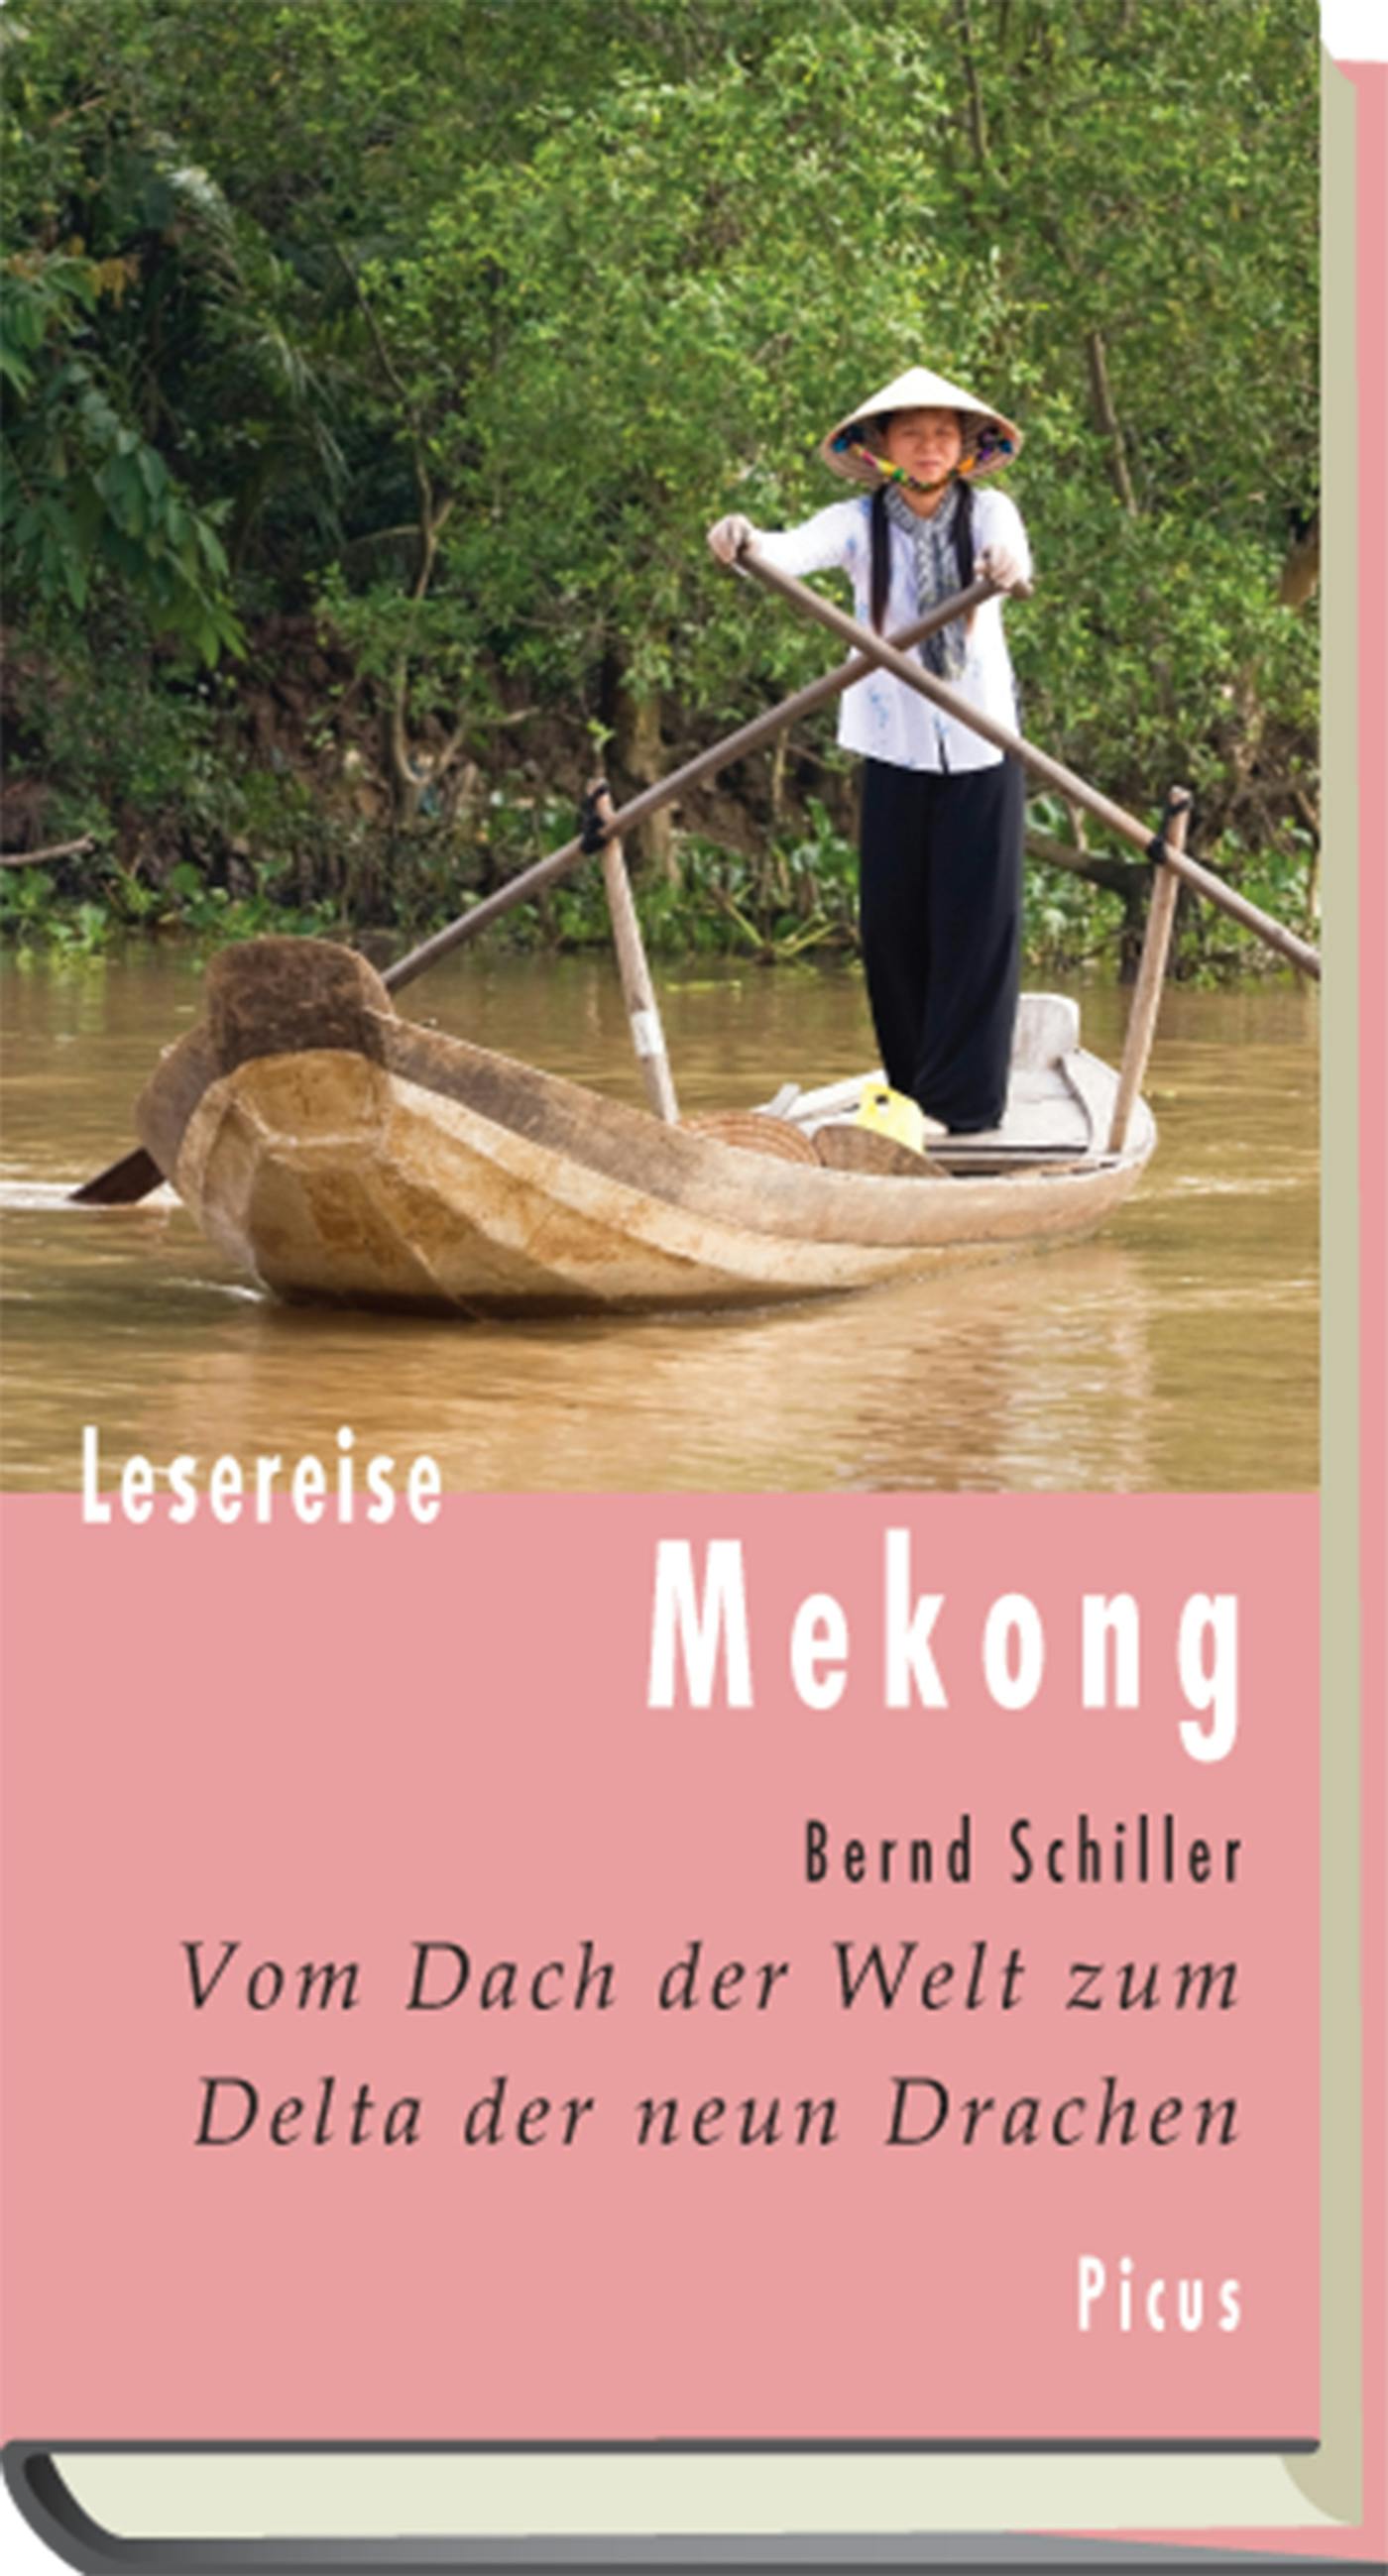 Lesereise Mekong: Vom Dach der Welt zum Delta der neun Drachen - Bernd Schiller